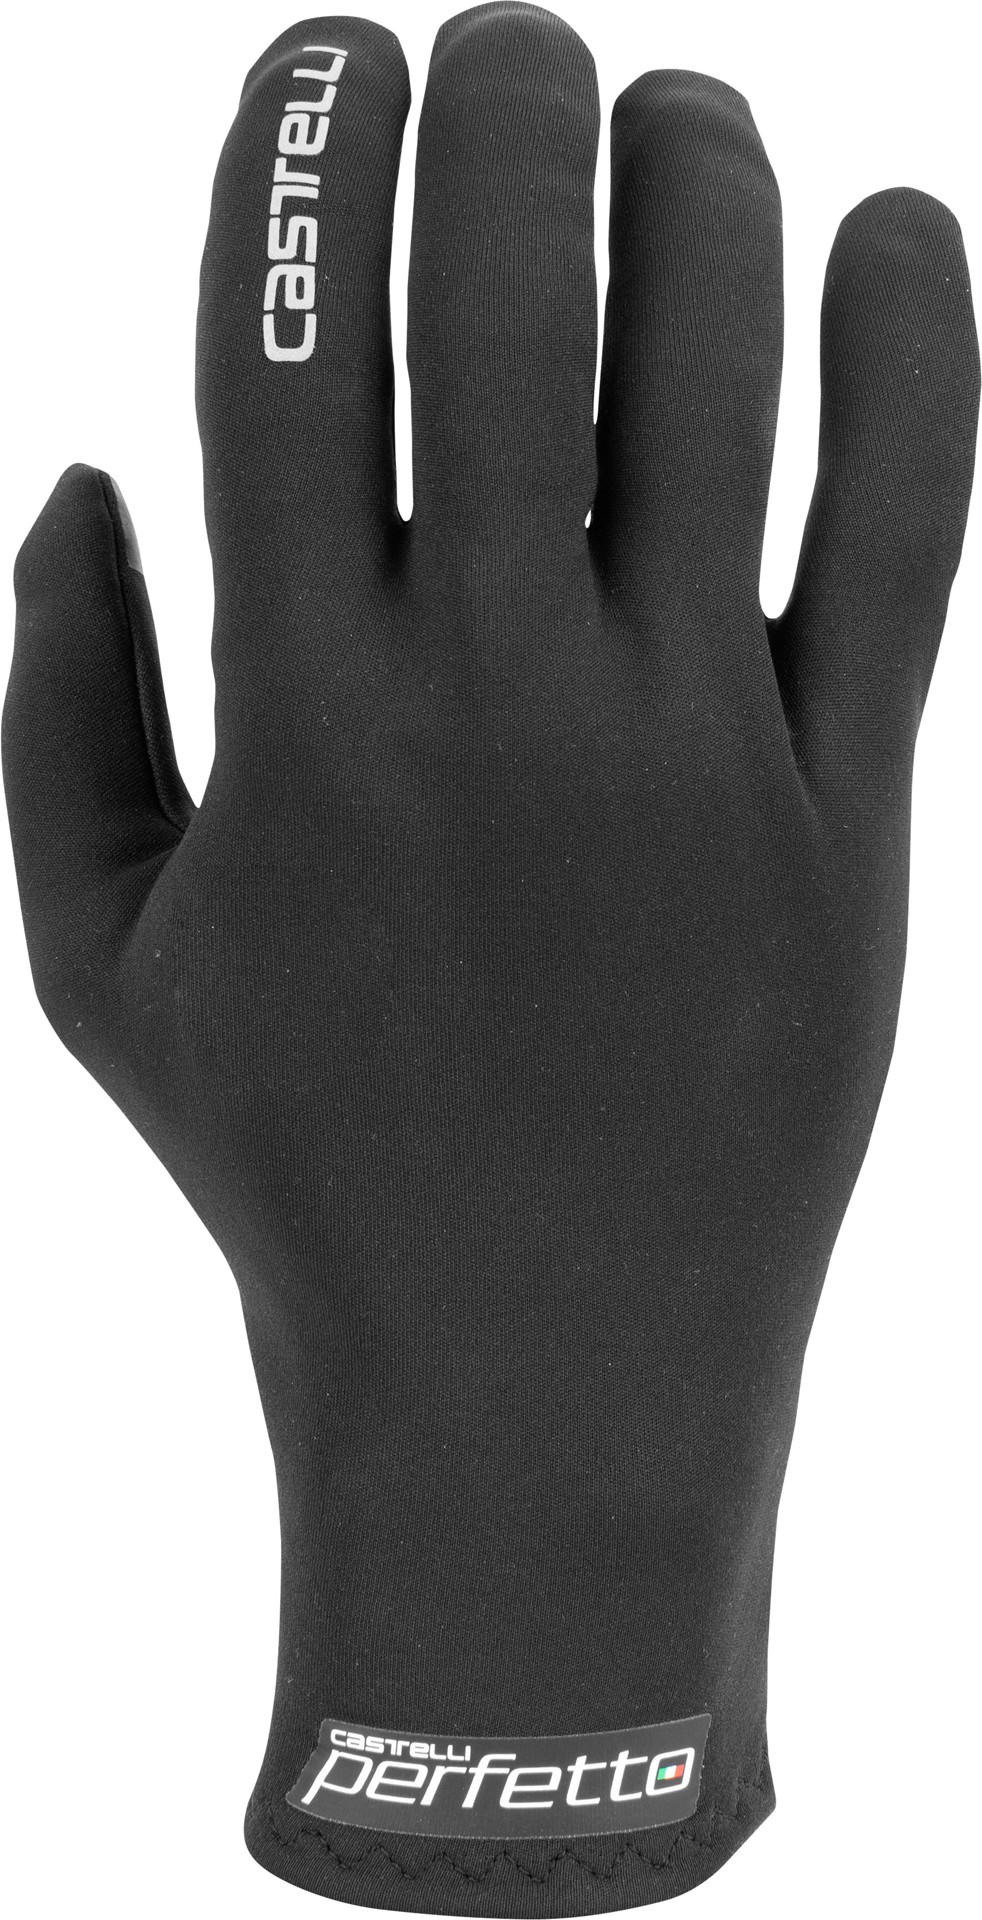 Castelli perfetto RoS gants de cyclisme femme noir